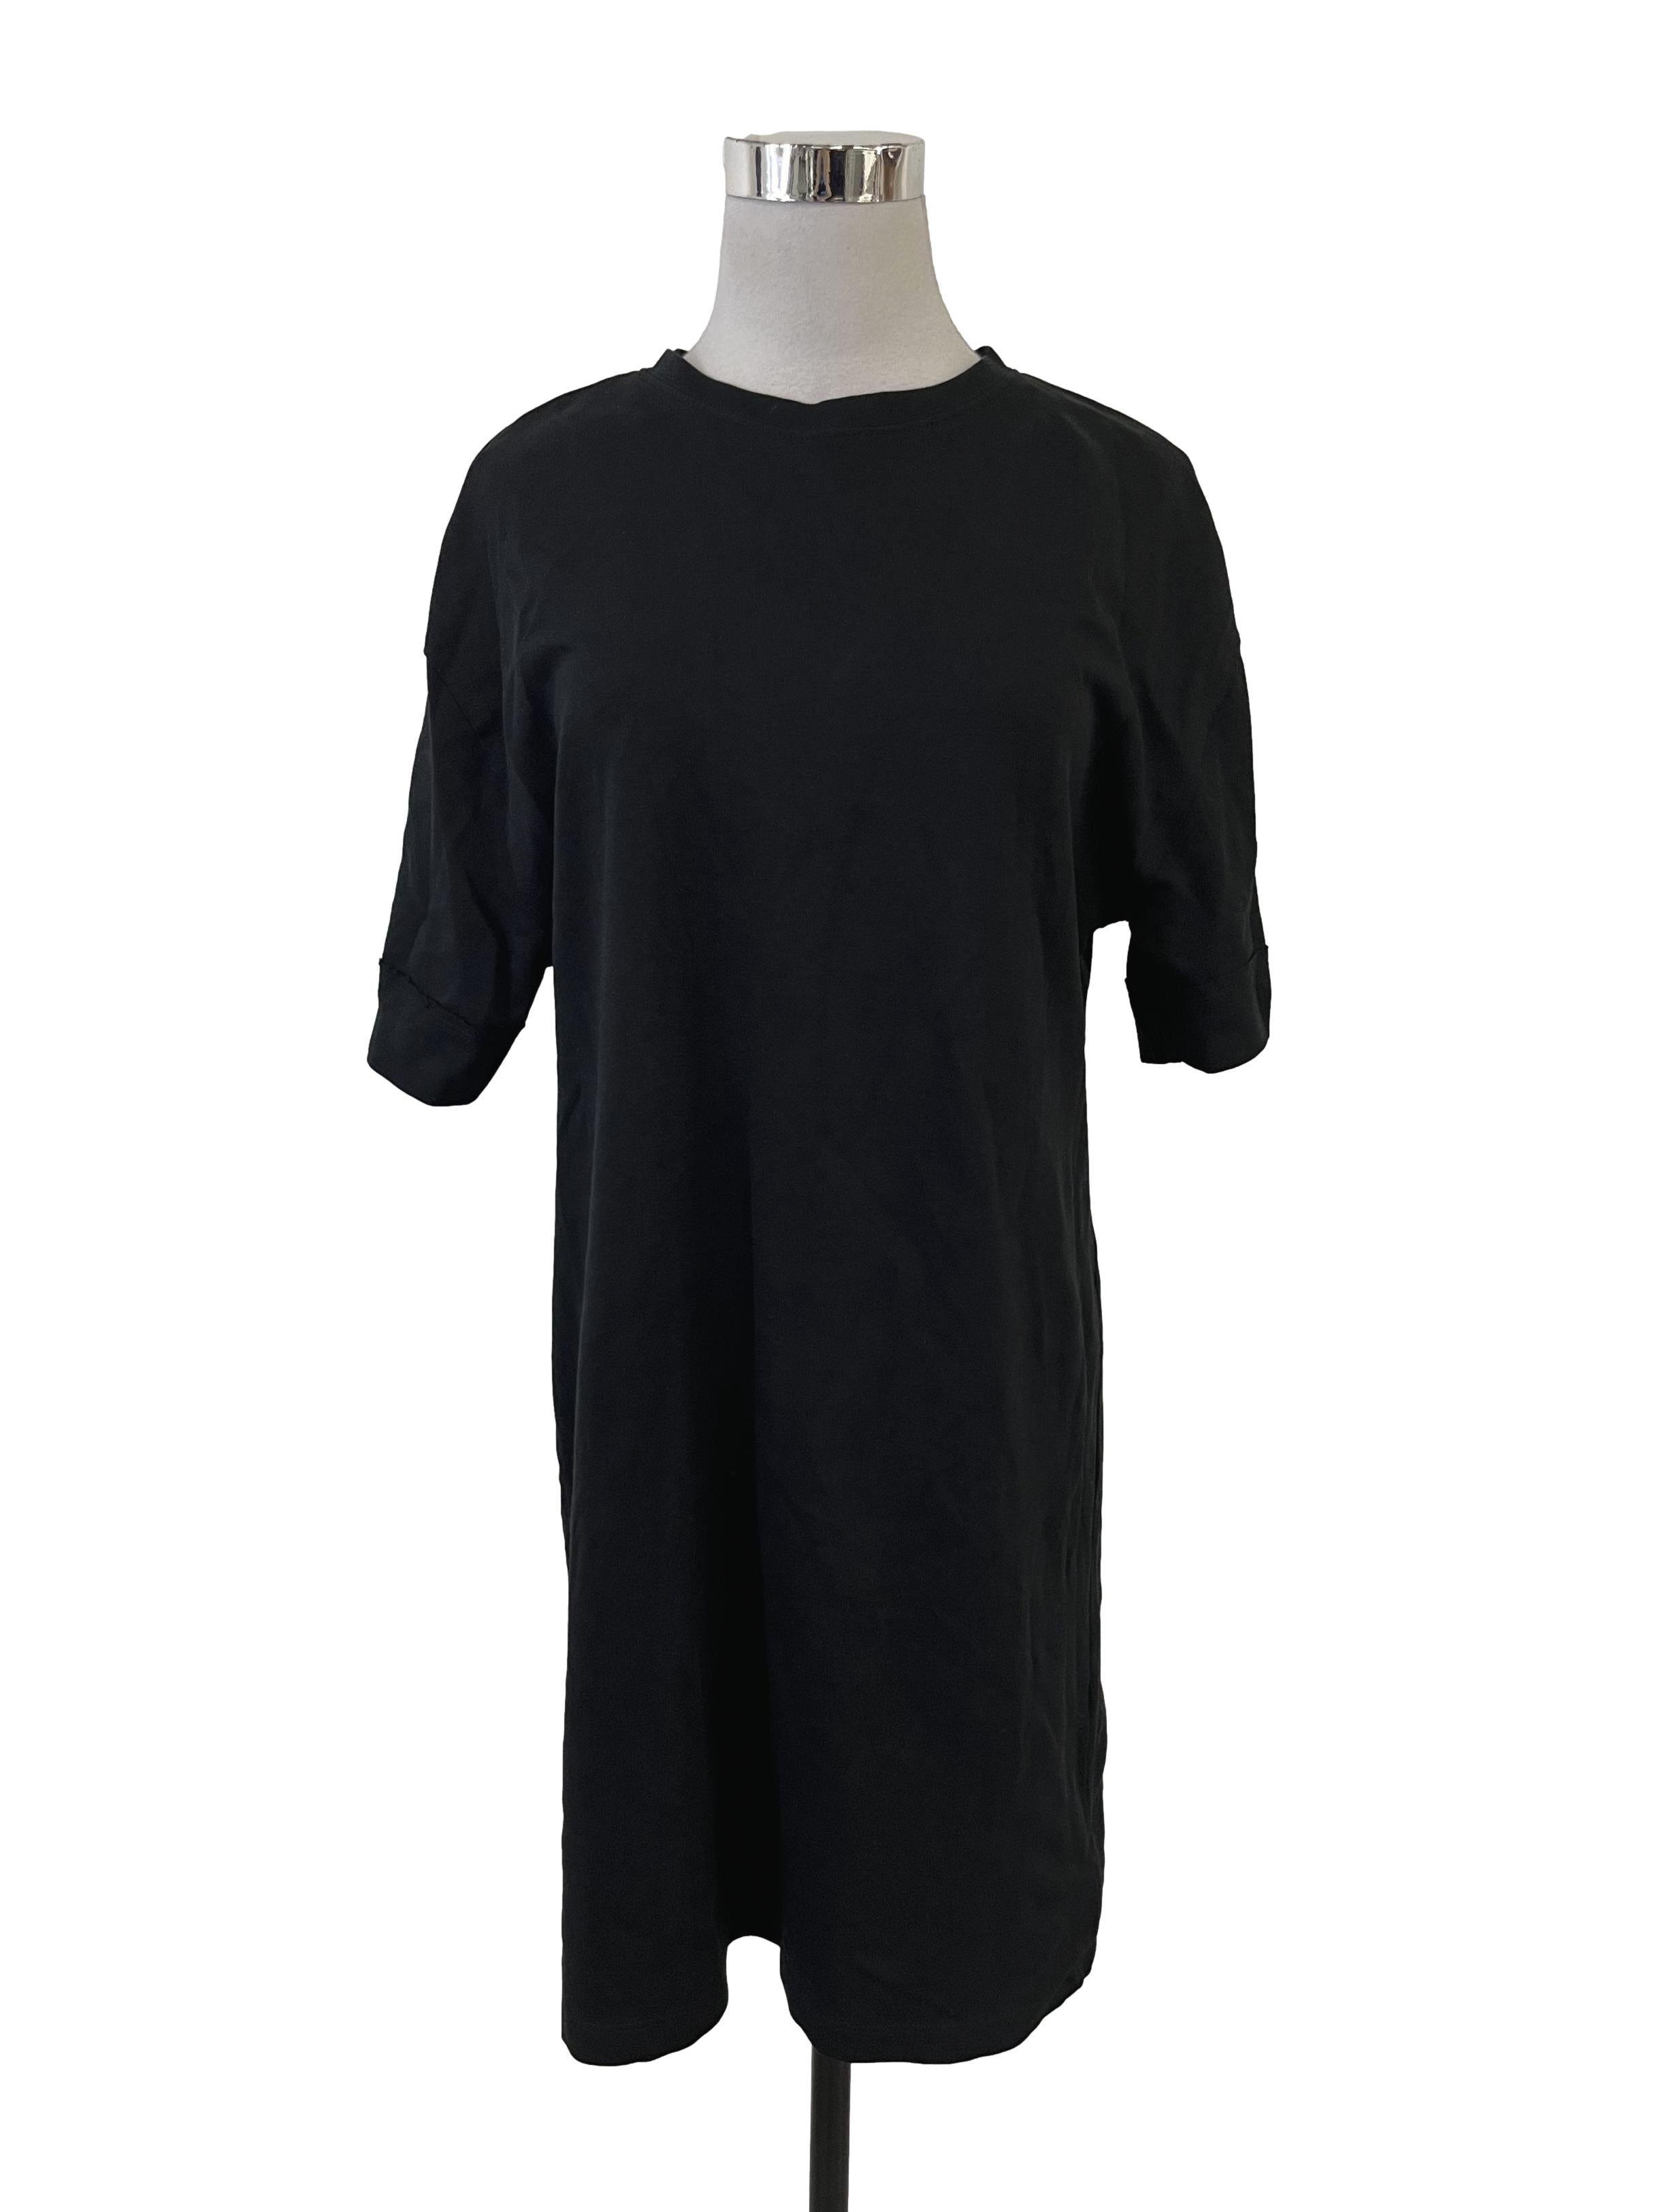 Jet Black T-shirt Dress